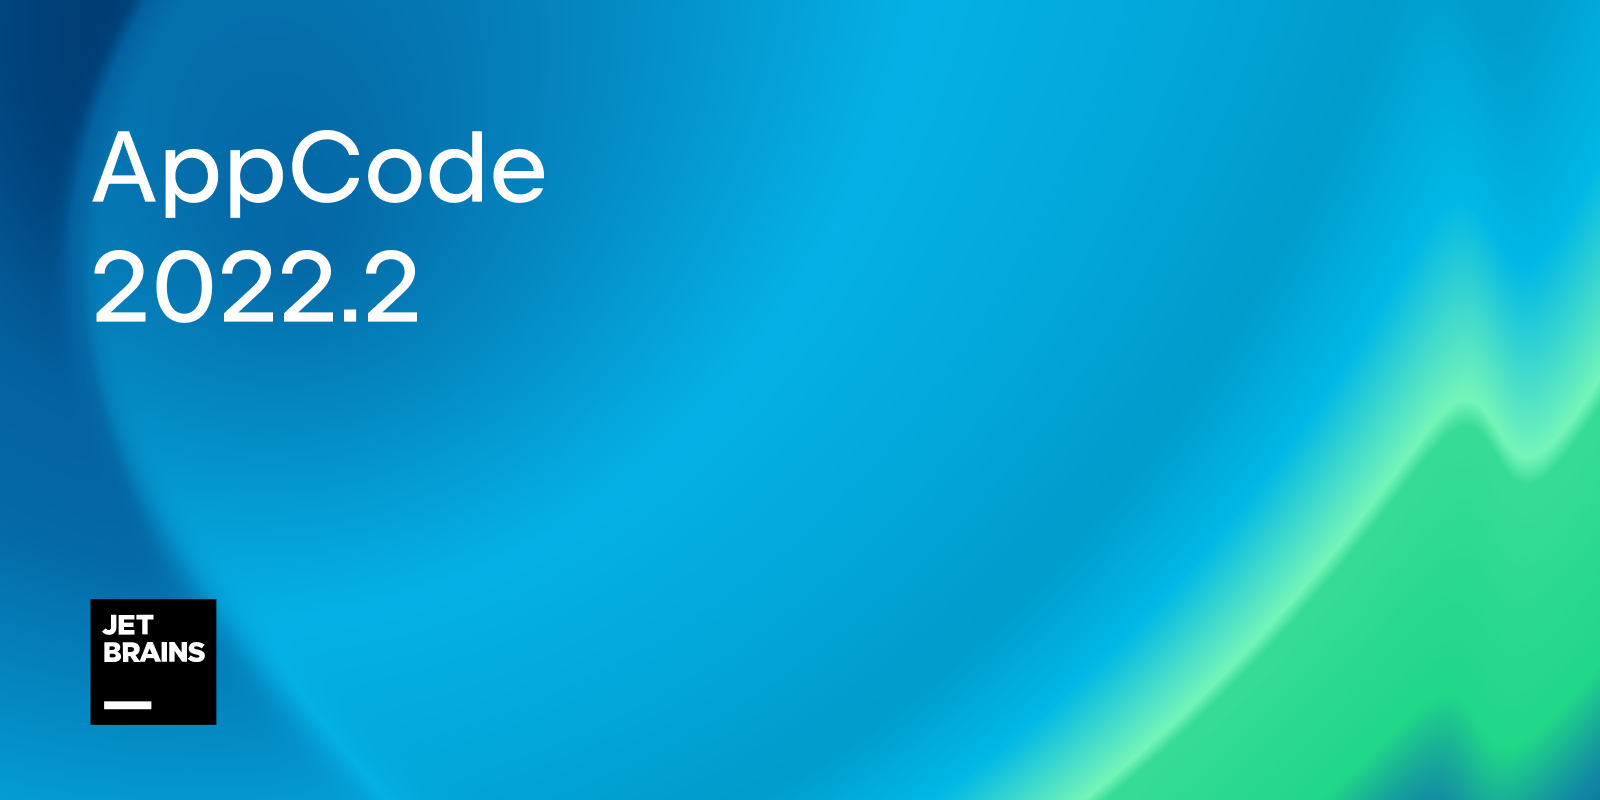 AppCode 2022.2 released